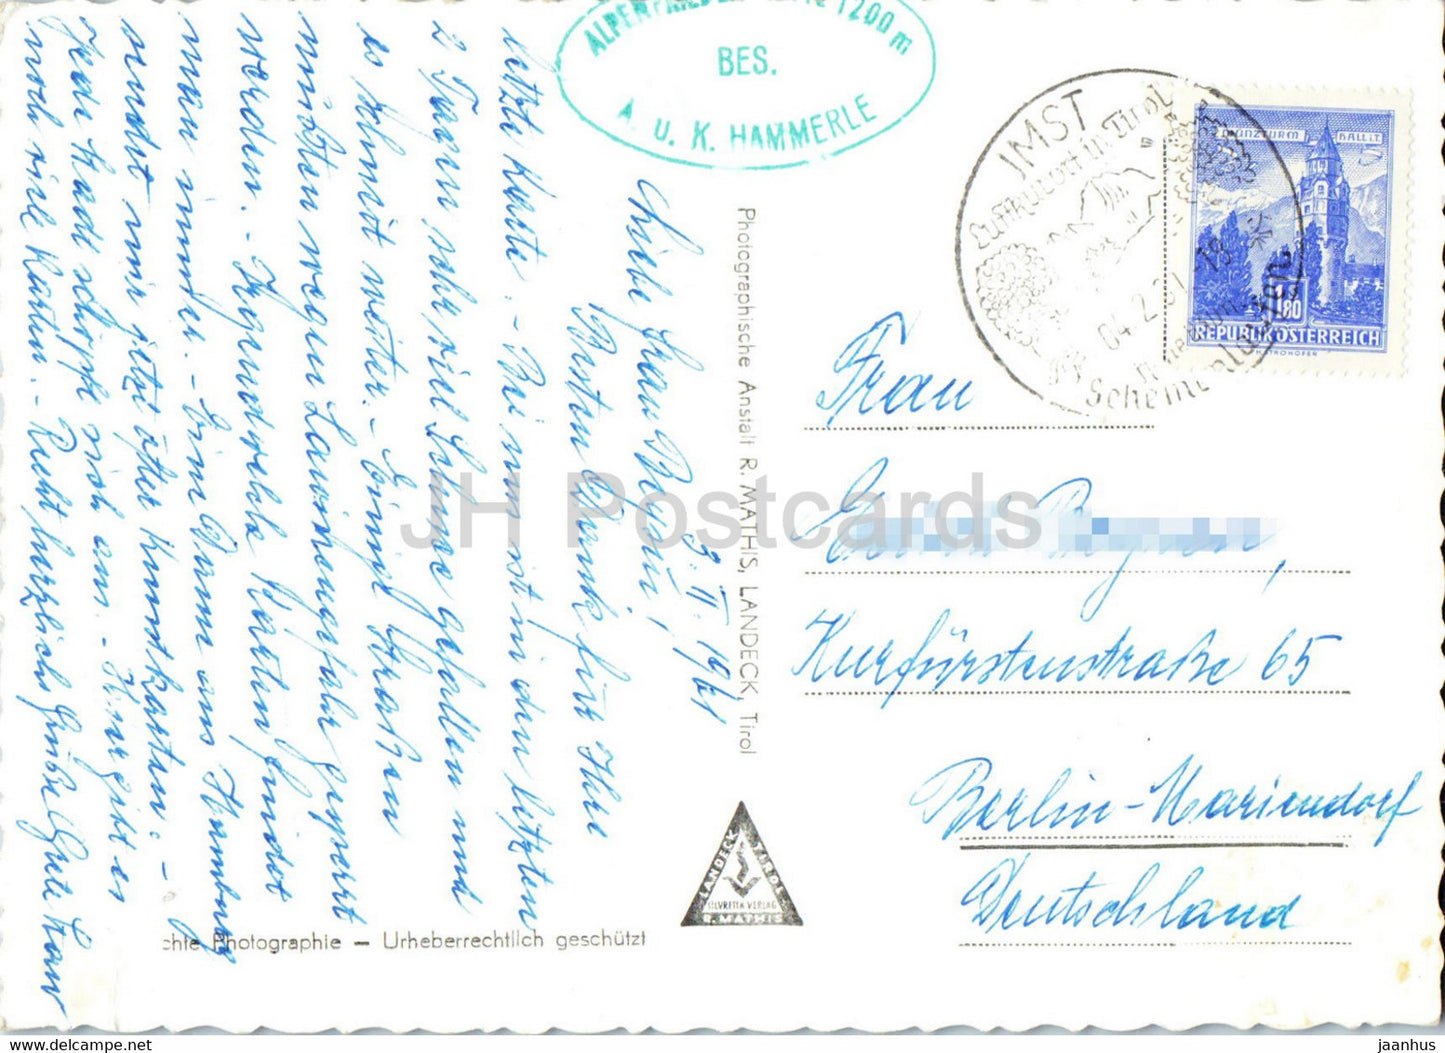 Hammerlehutte mit Miemingergruppe u Kronburg - Tirol - old postcard - 1961 - Austria - used